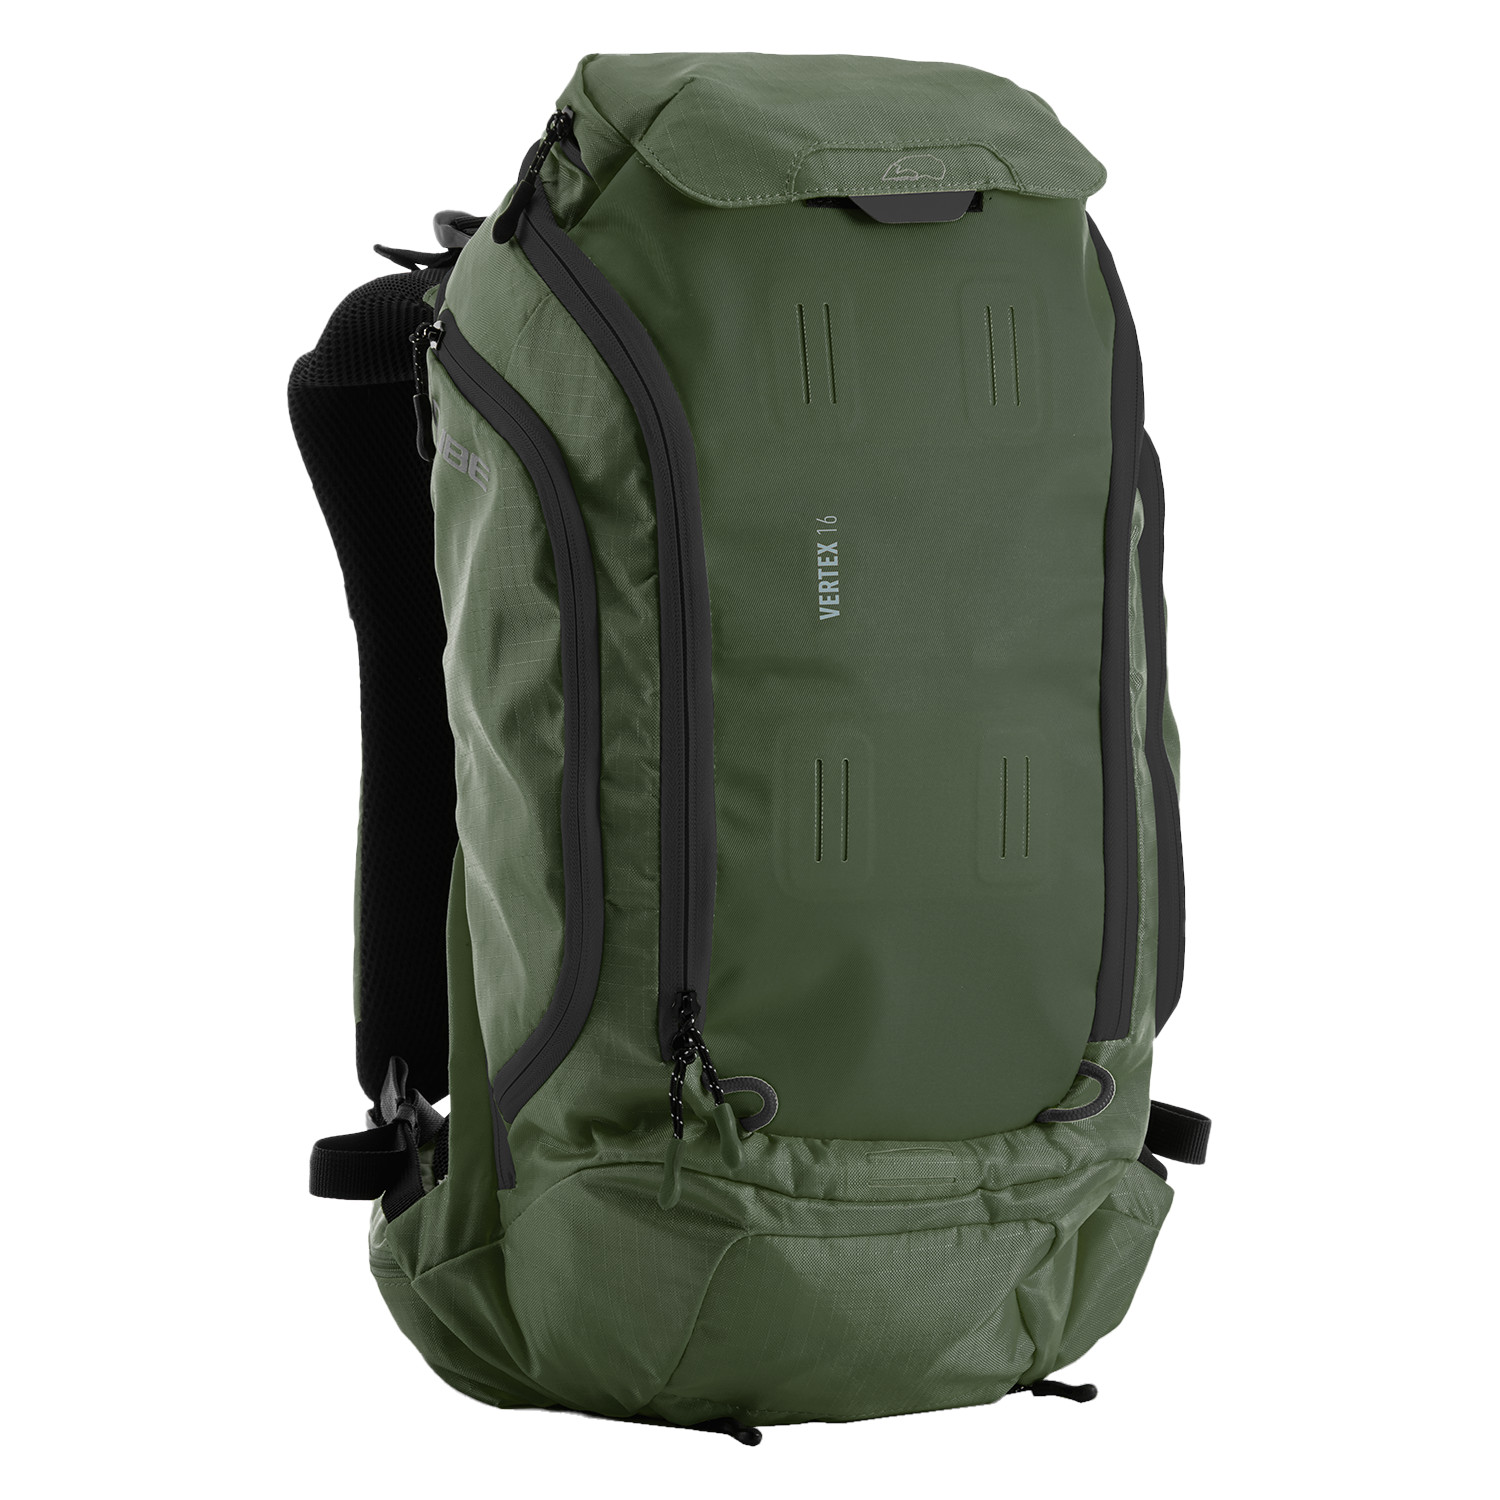 Productfoto van CUBE VERTEX 16 Backpack - TM - olive